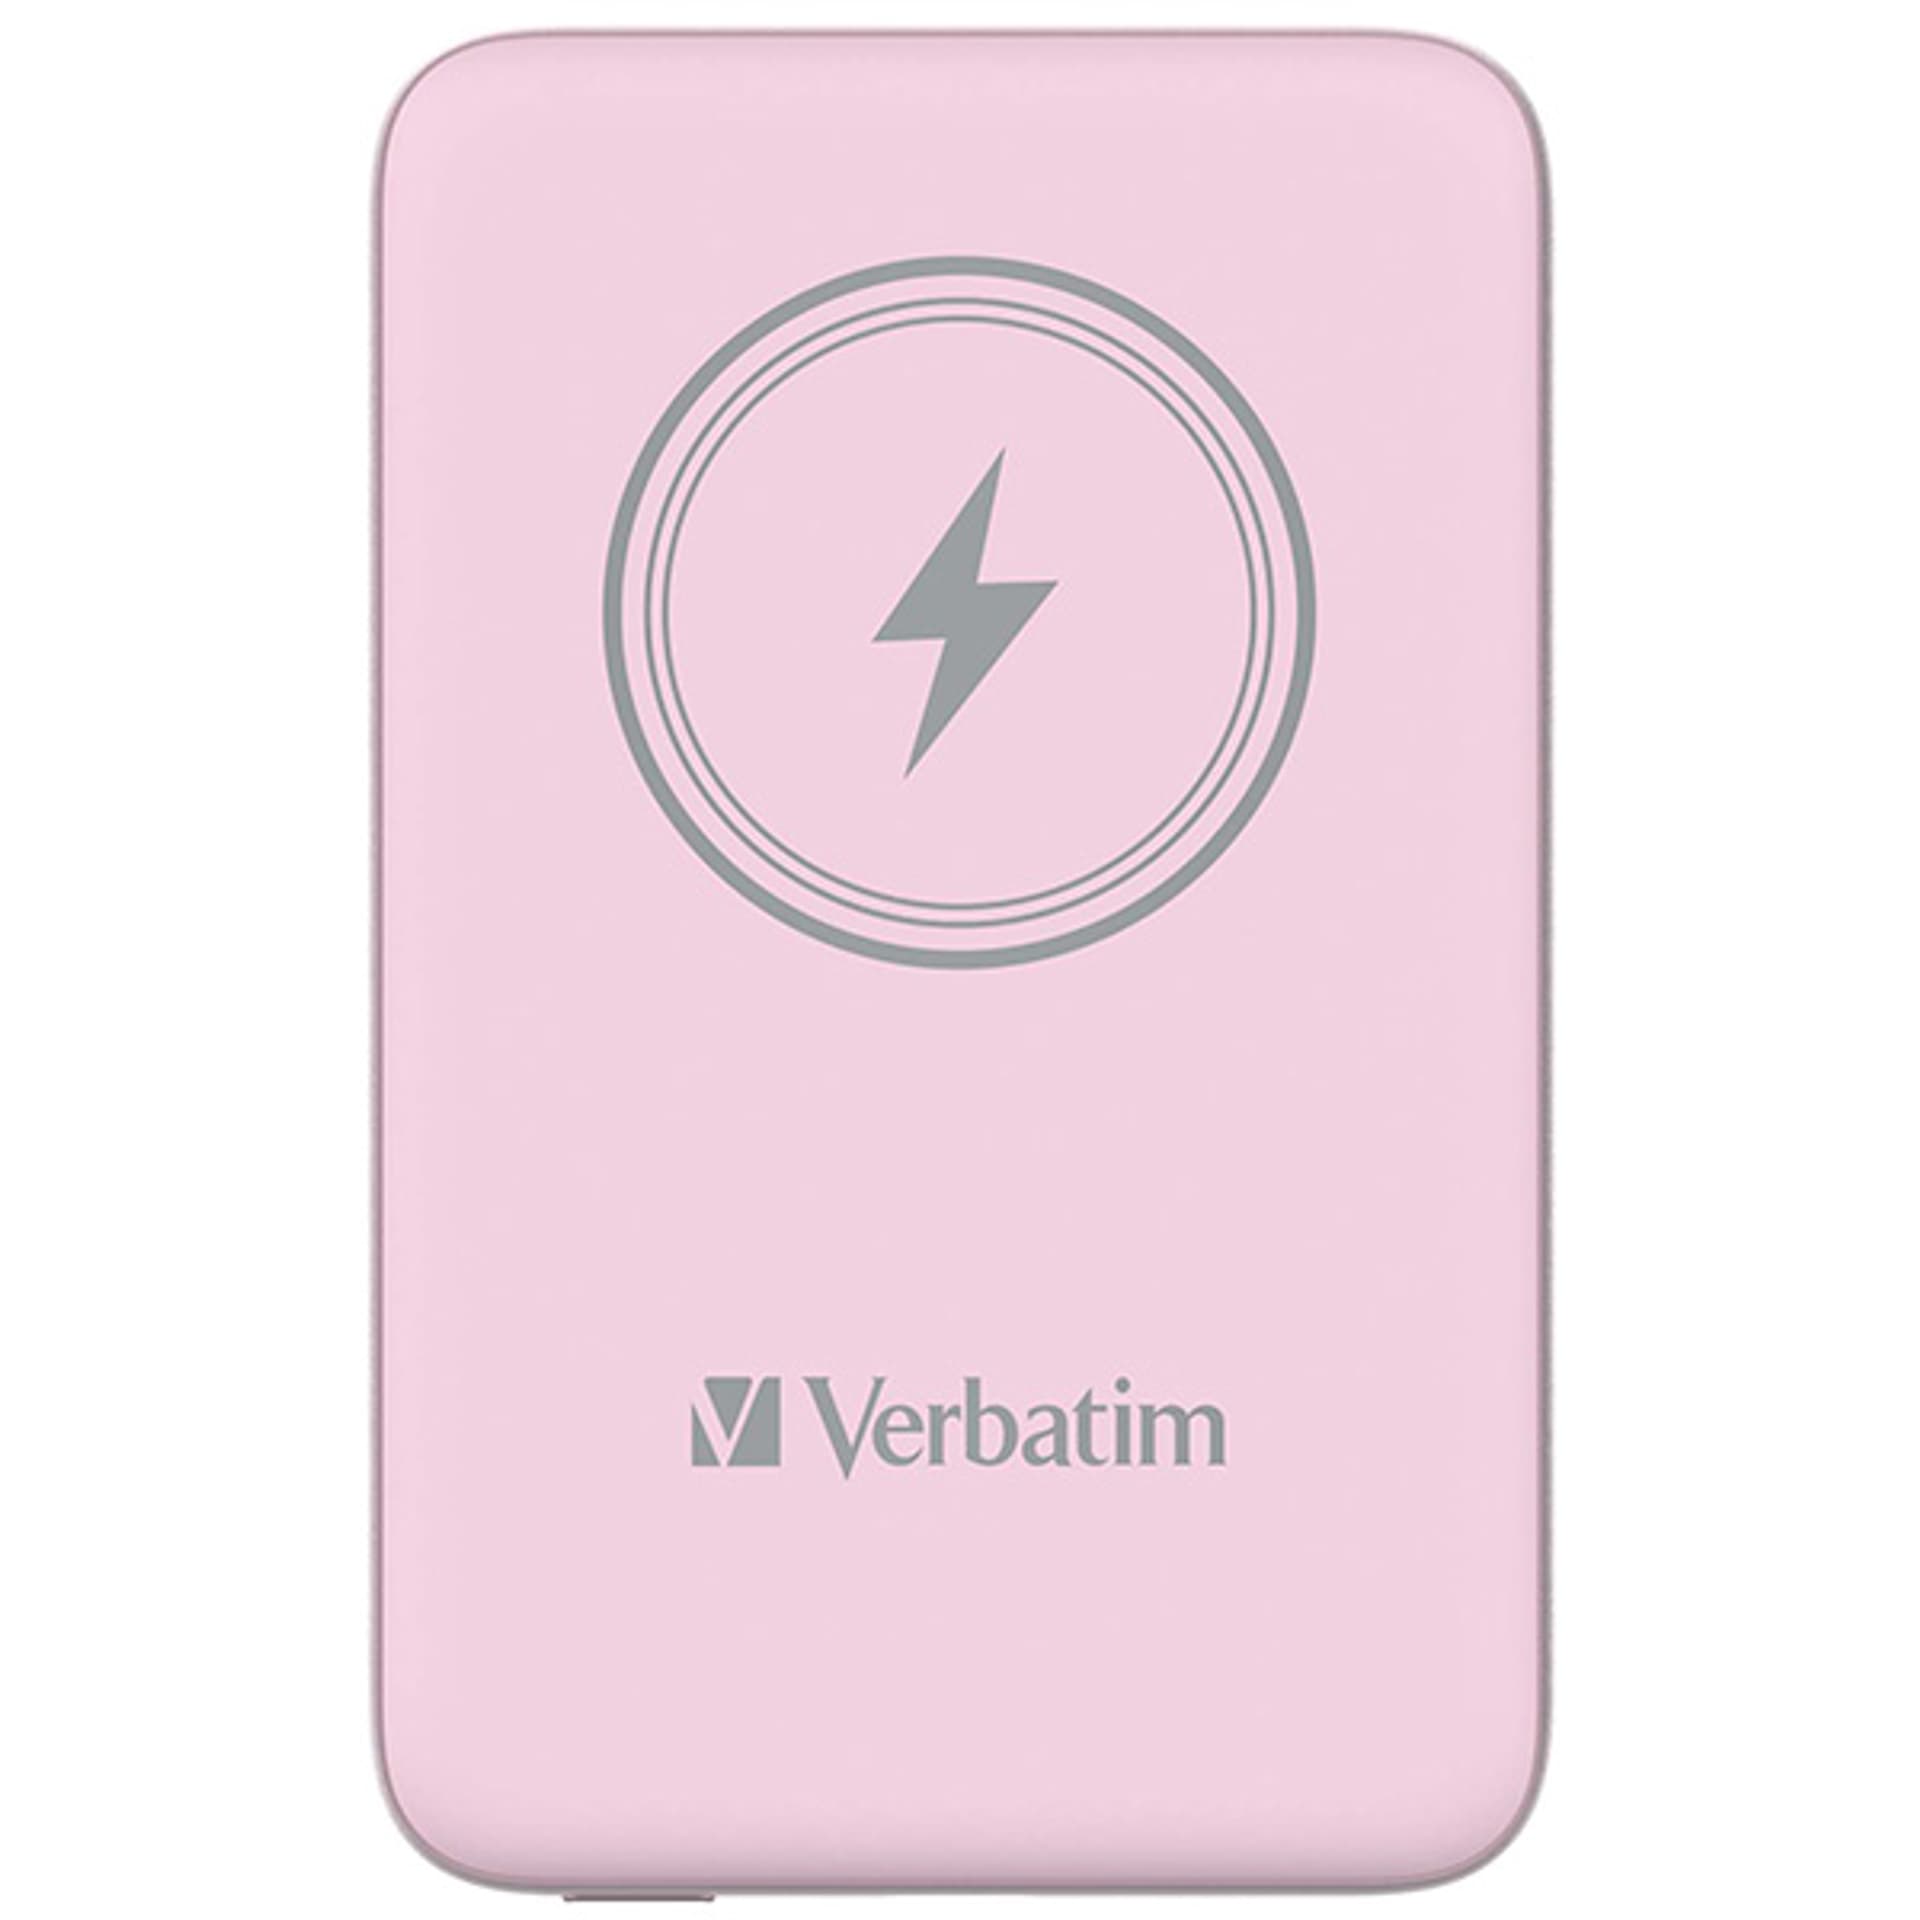 Verbatim Charge 'n' Go Magnetic Wireless Power Bank 10000mAh różowy - darmowy odbiór w 22 miastach i bezpłatny zwrot Paczkomatem aż do 15 dni